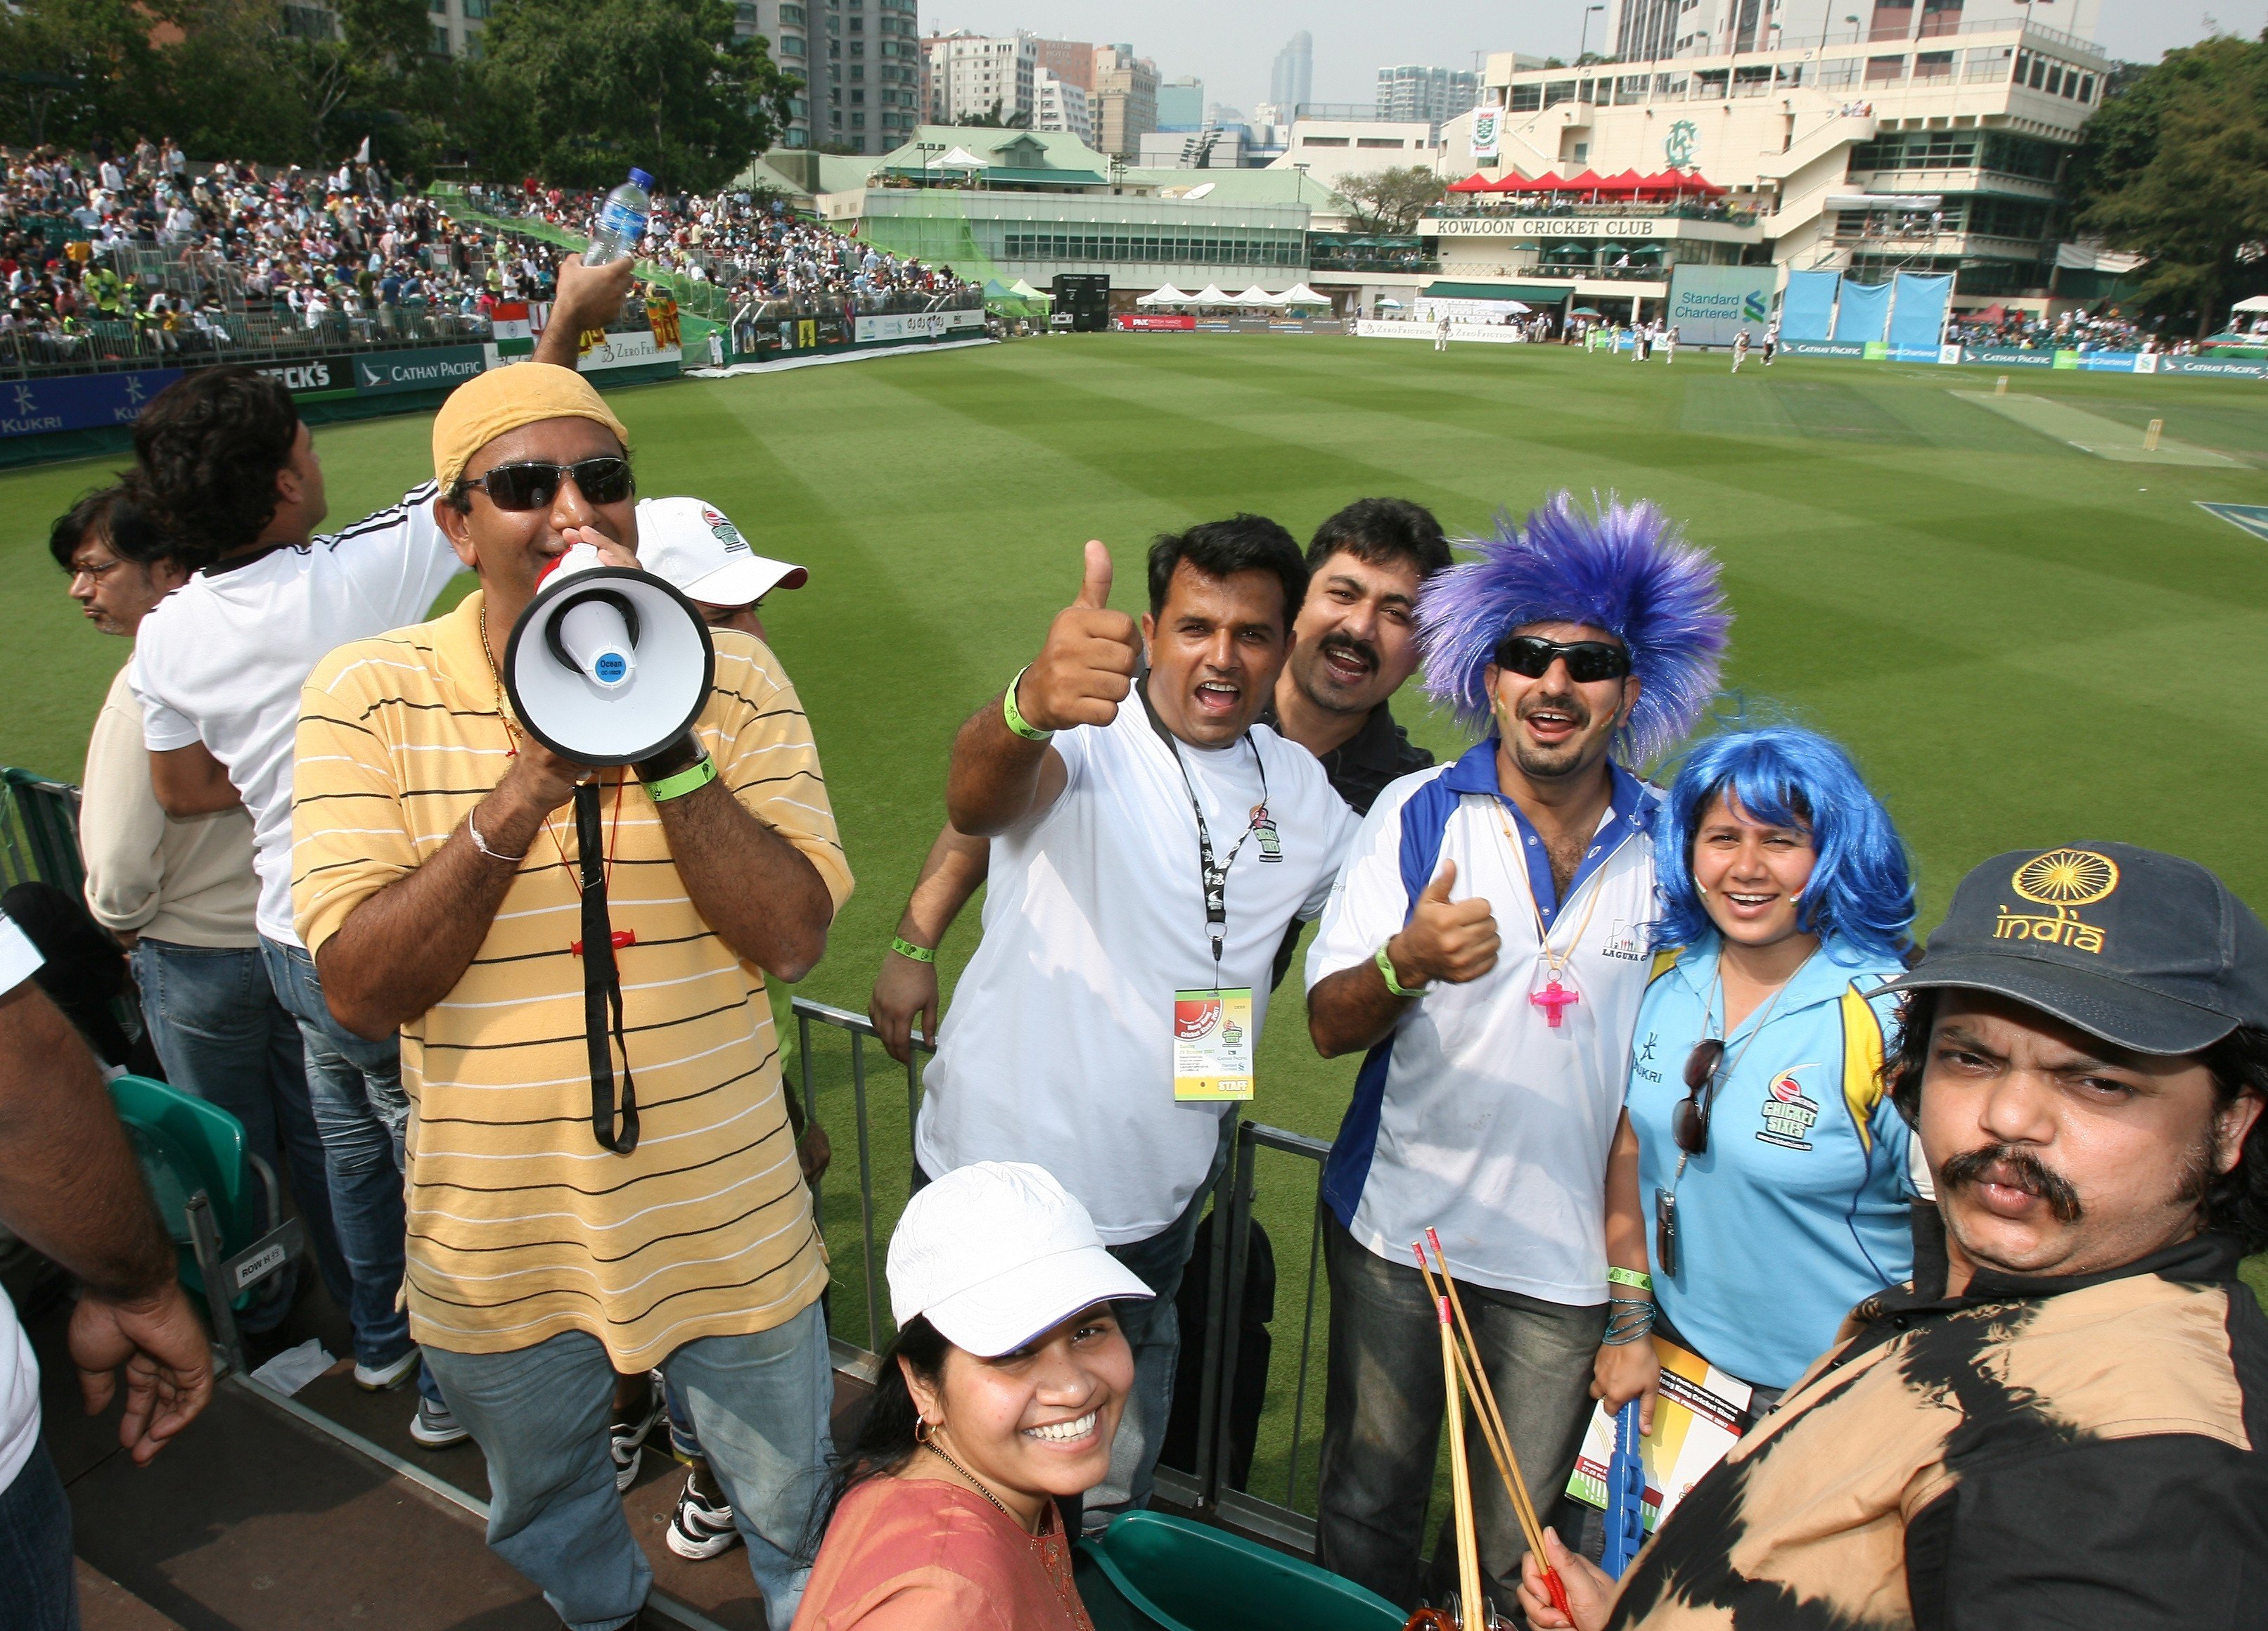 Hong Kong Sixes fans at the Kowloon Cricket Club. Photos: SCMP